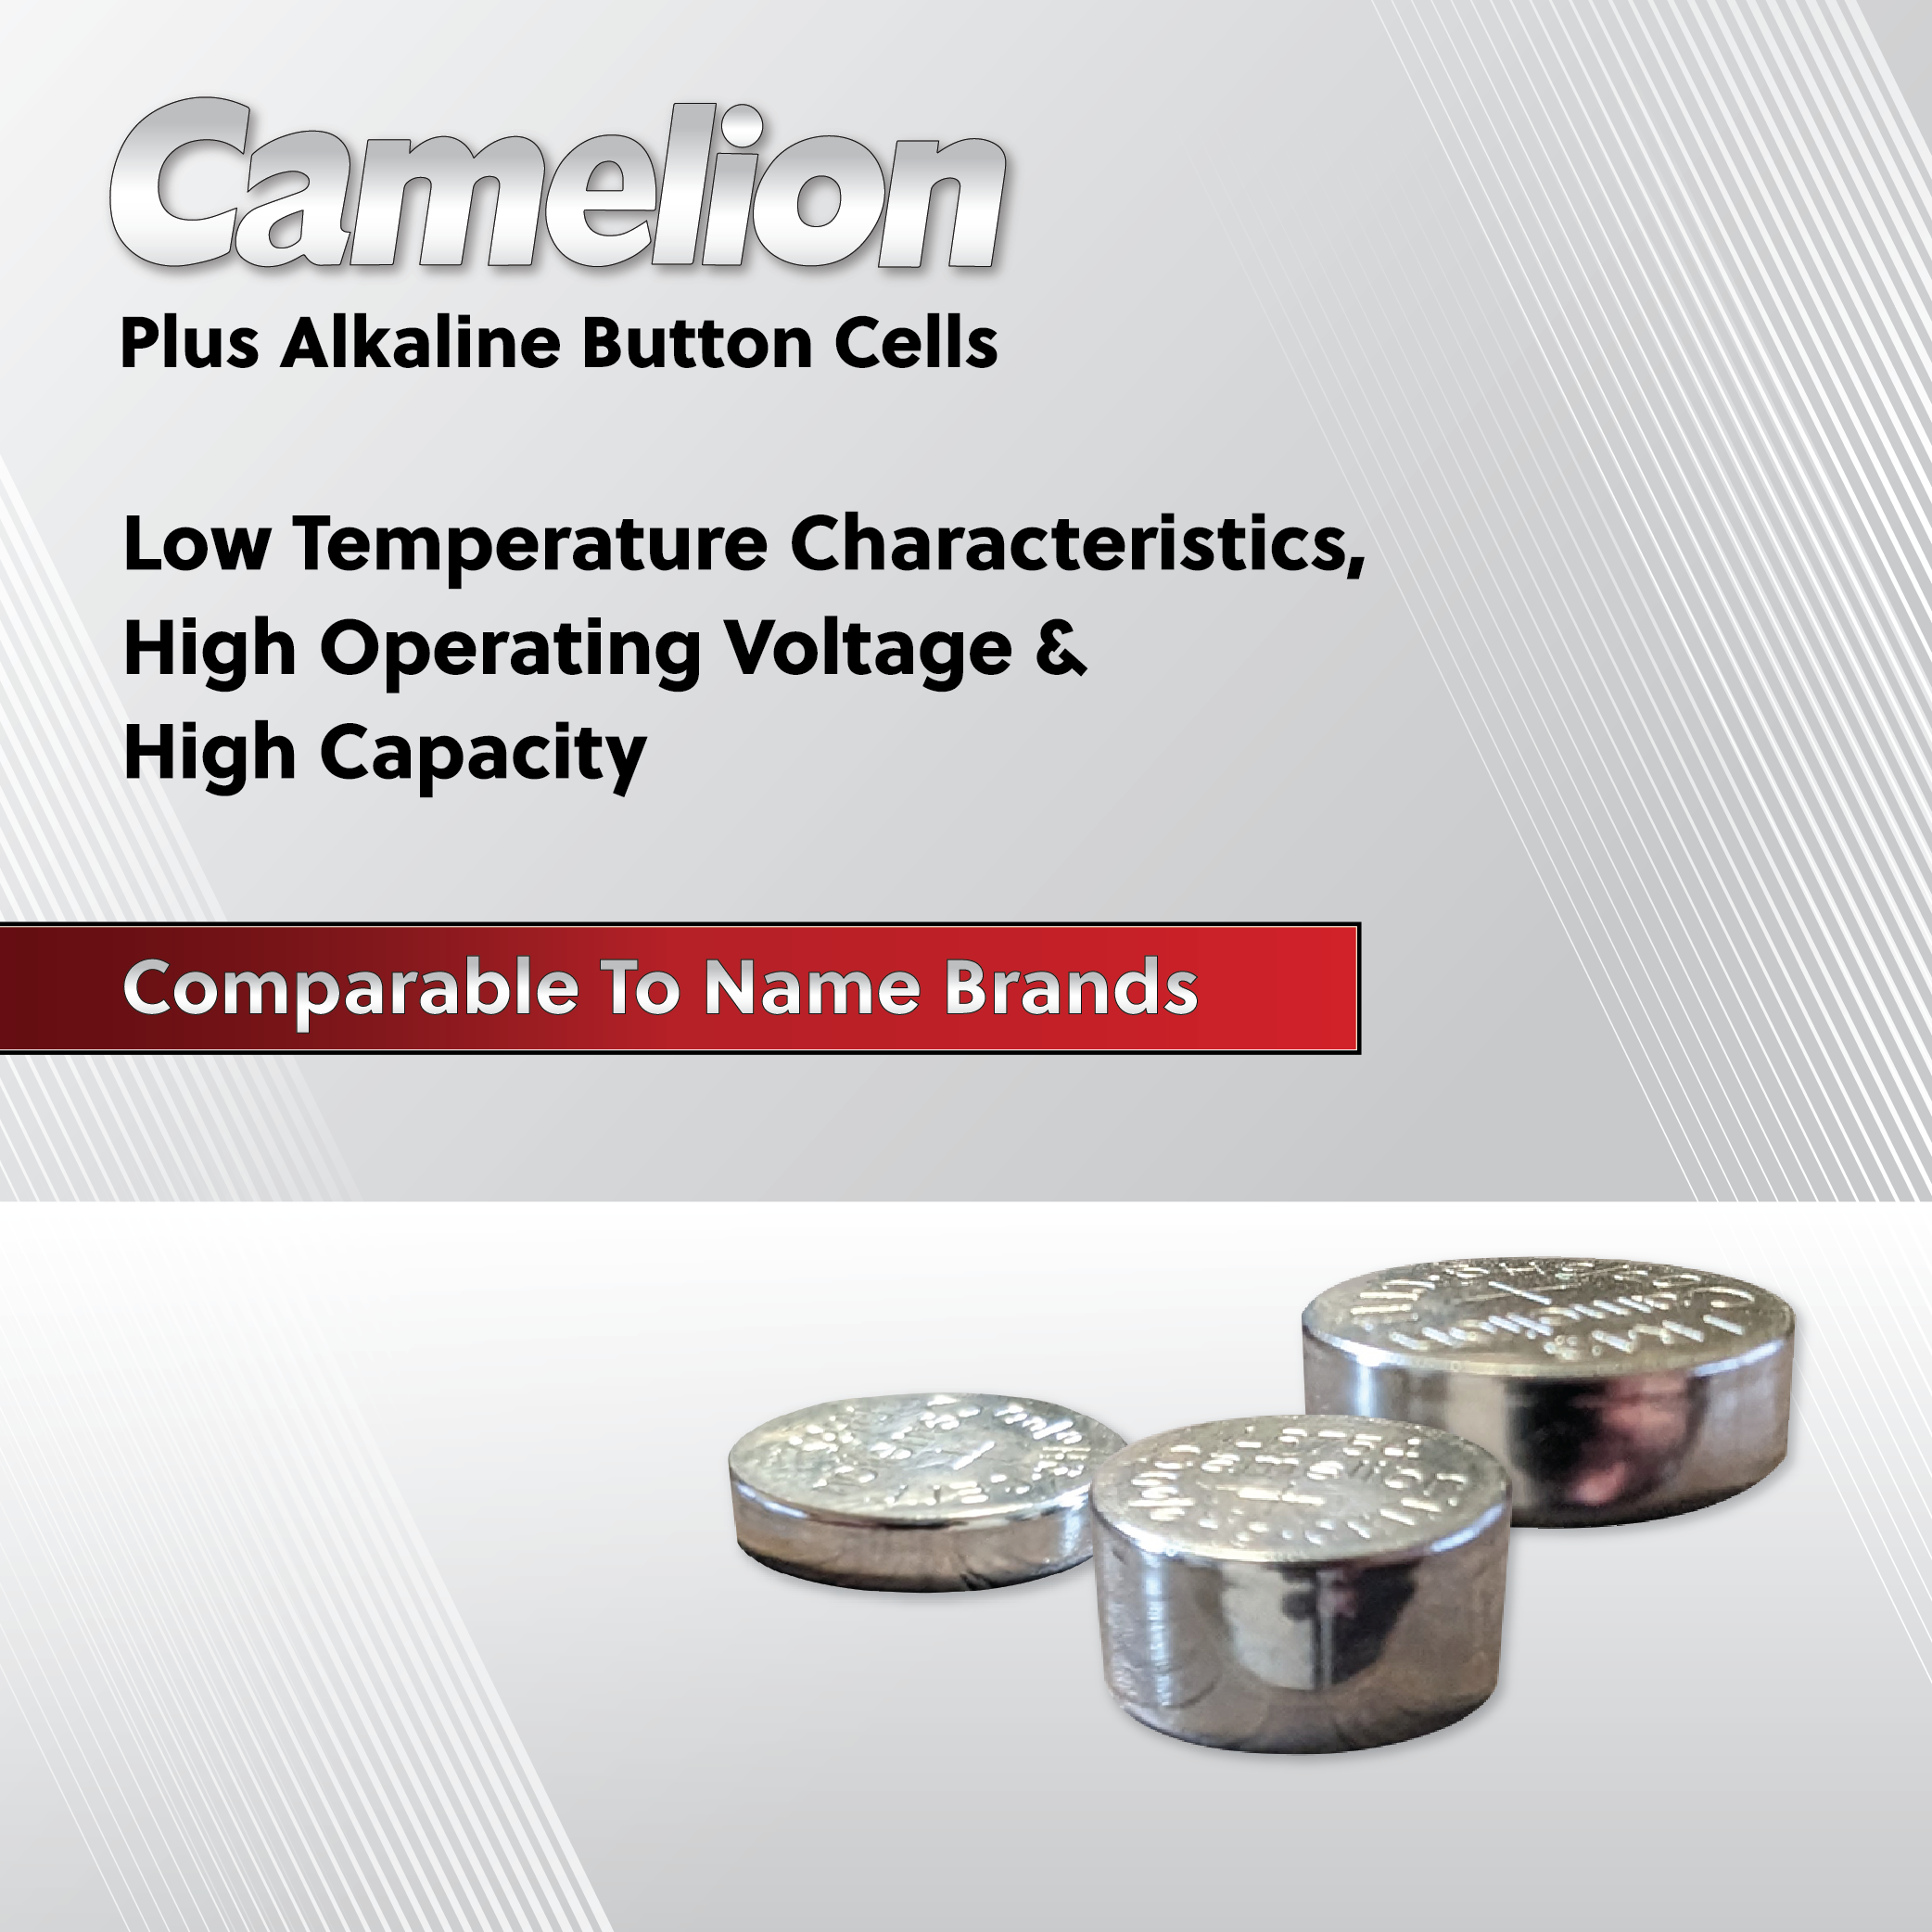 Camelion AG10 / 389 / LR1130 1.5V Button Cell Battery